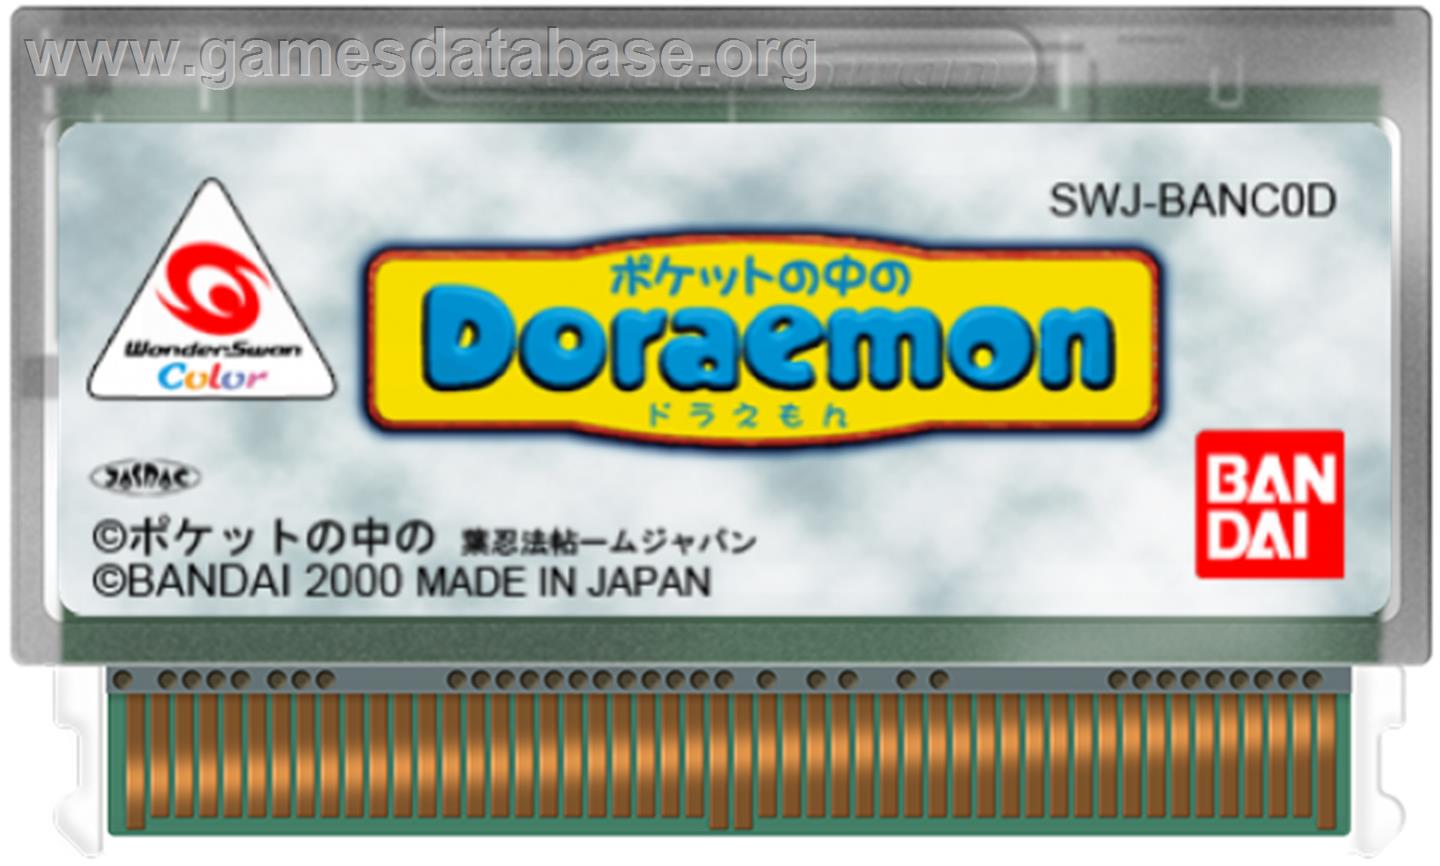 Doraemon in Your Pocket - Bandai WonderSwan Color - Artwork - Cartridge